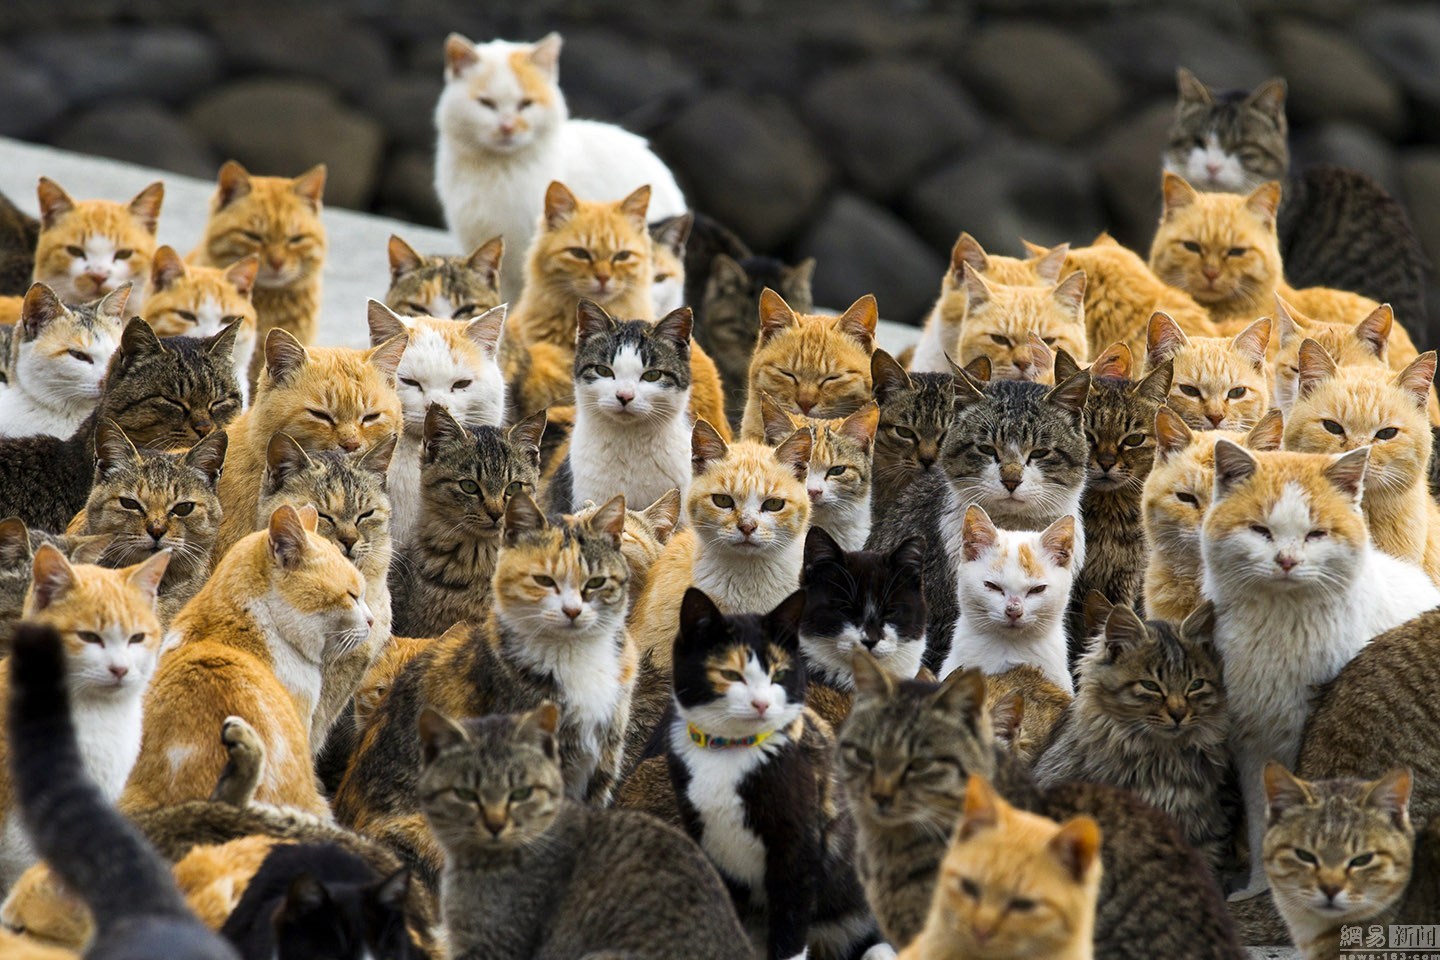 øen - Ormekur til kat om den fantastiske katte ø.